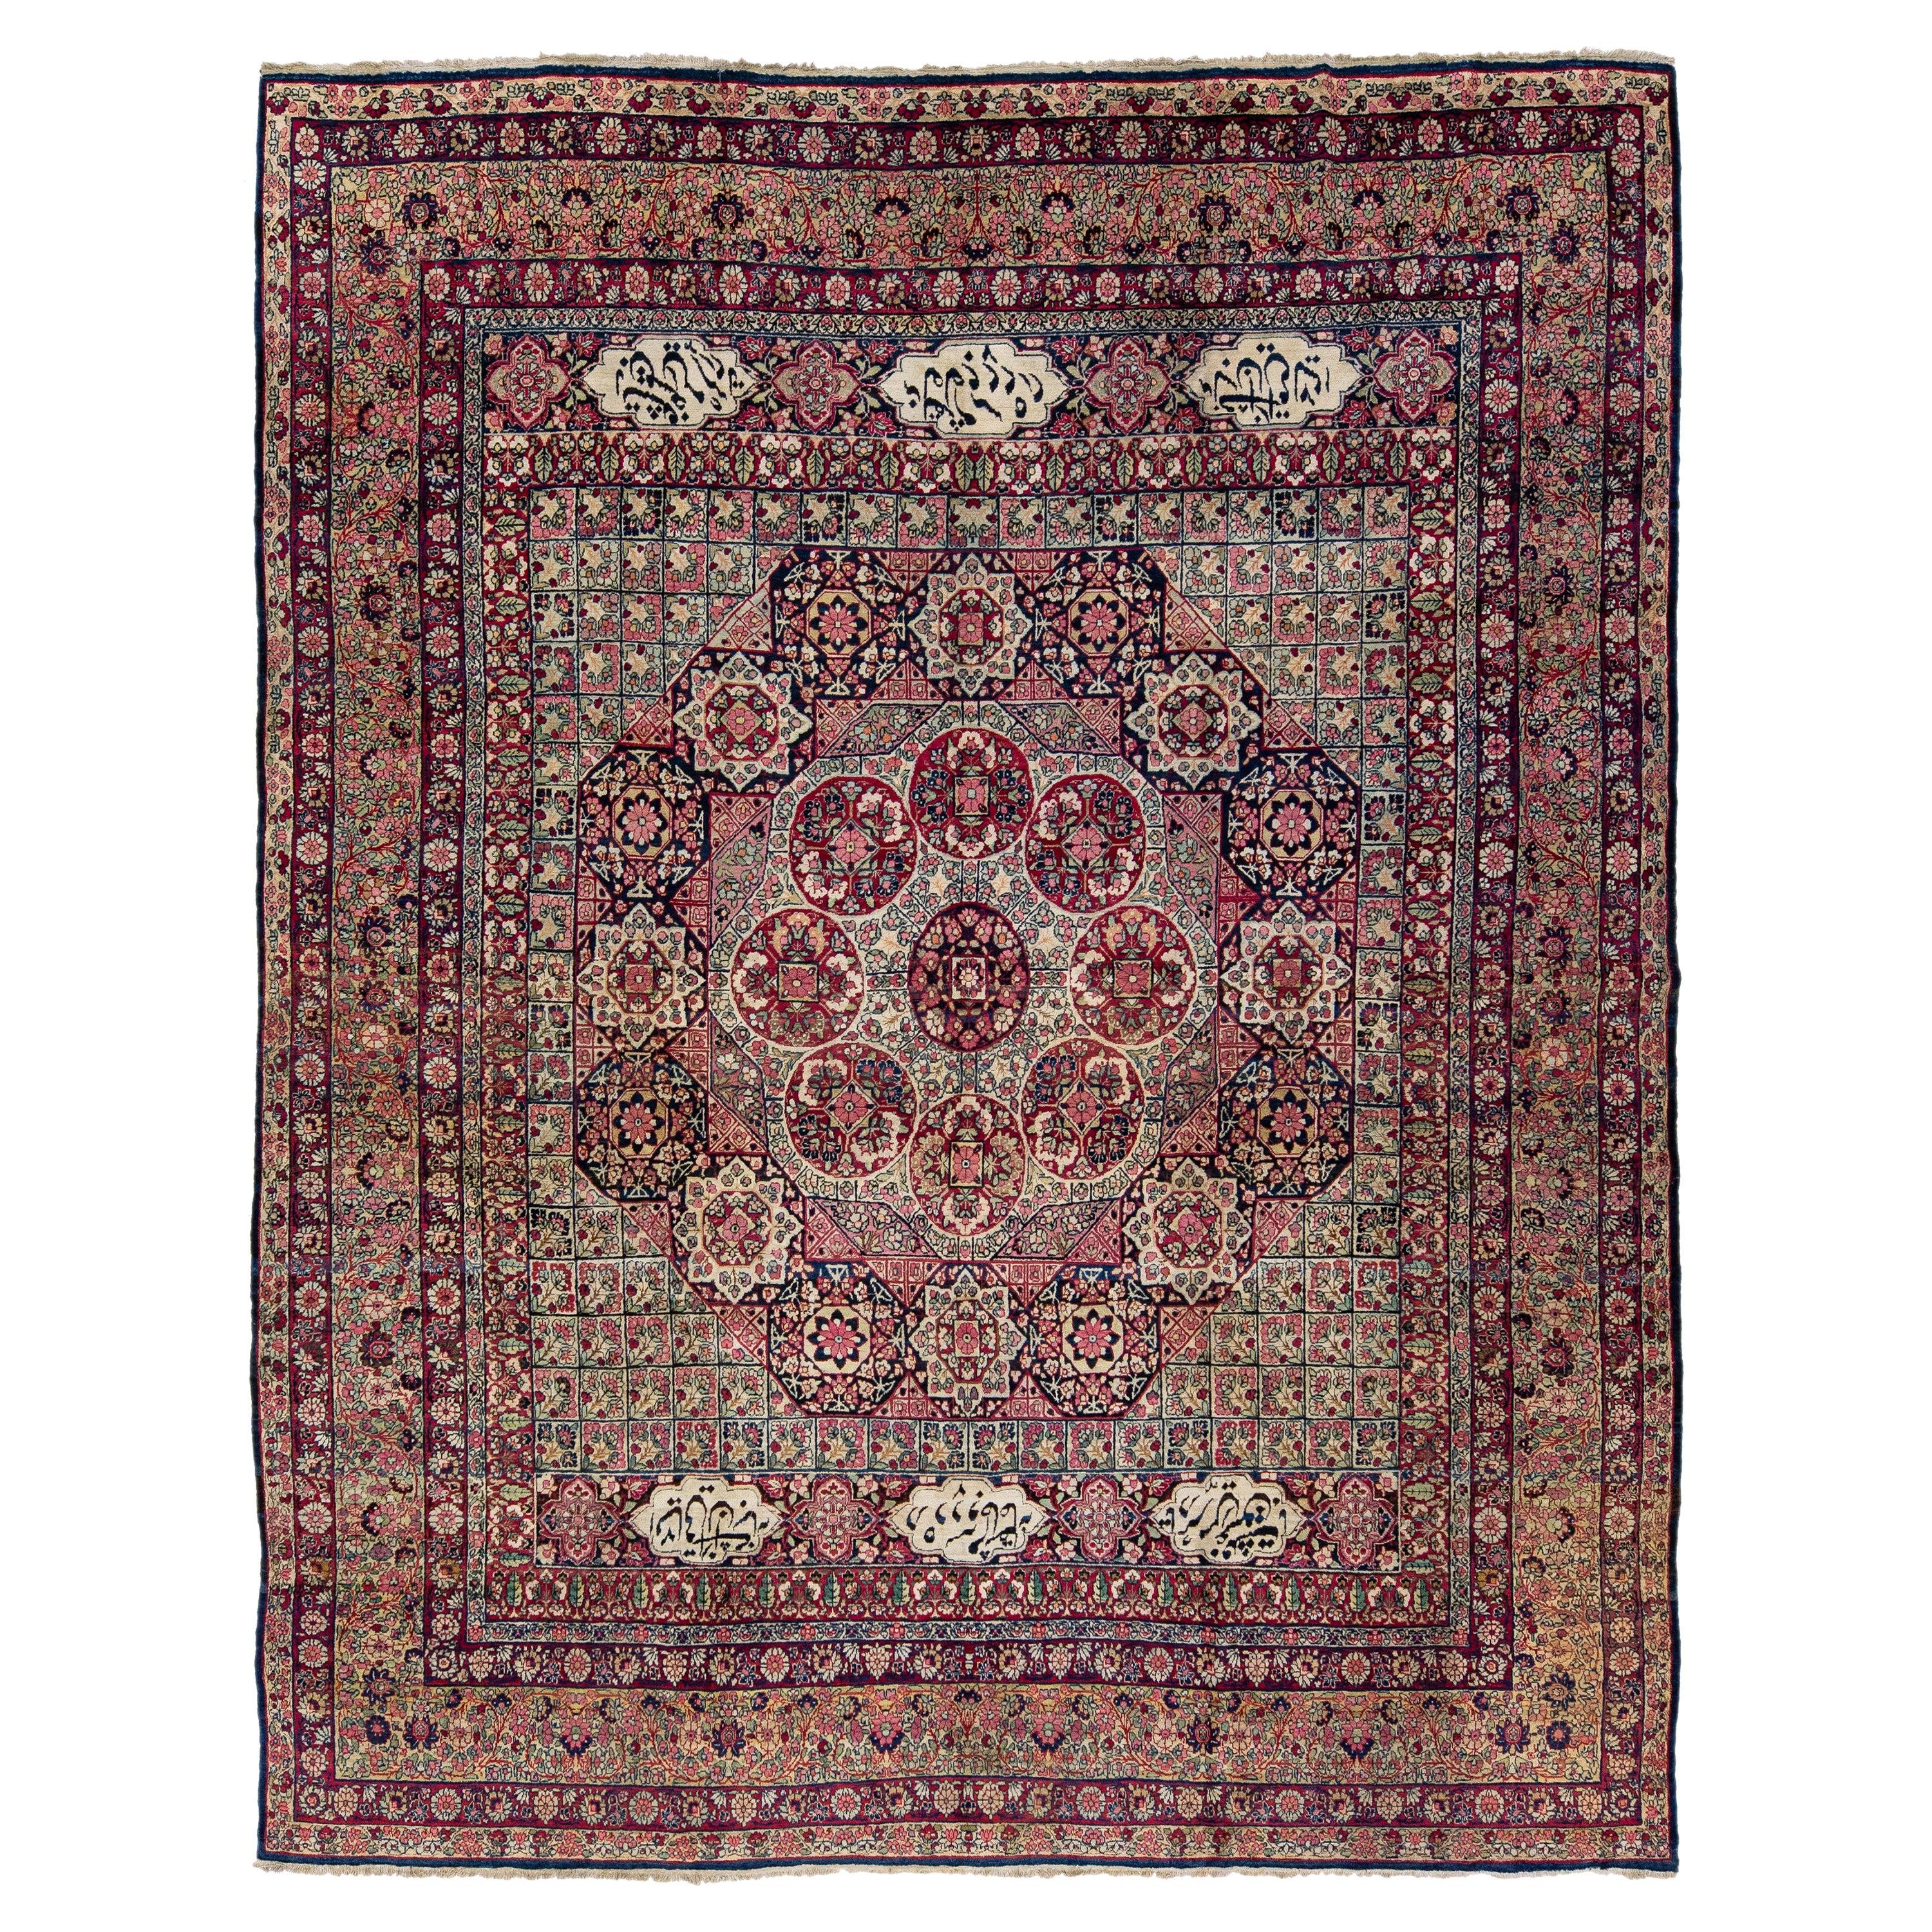 Antique Kerman Handmade Allover Floral Designed Wool Rug For Sale